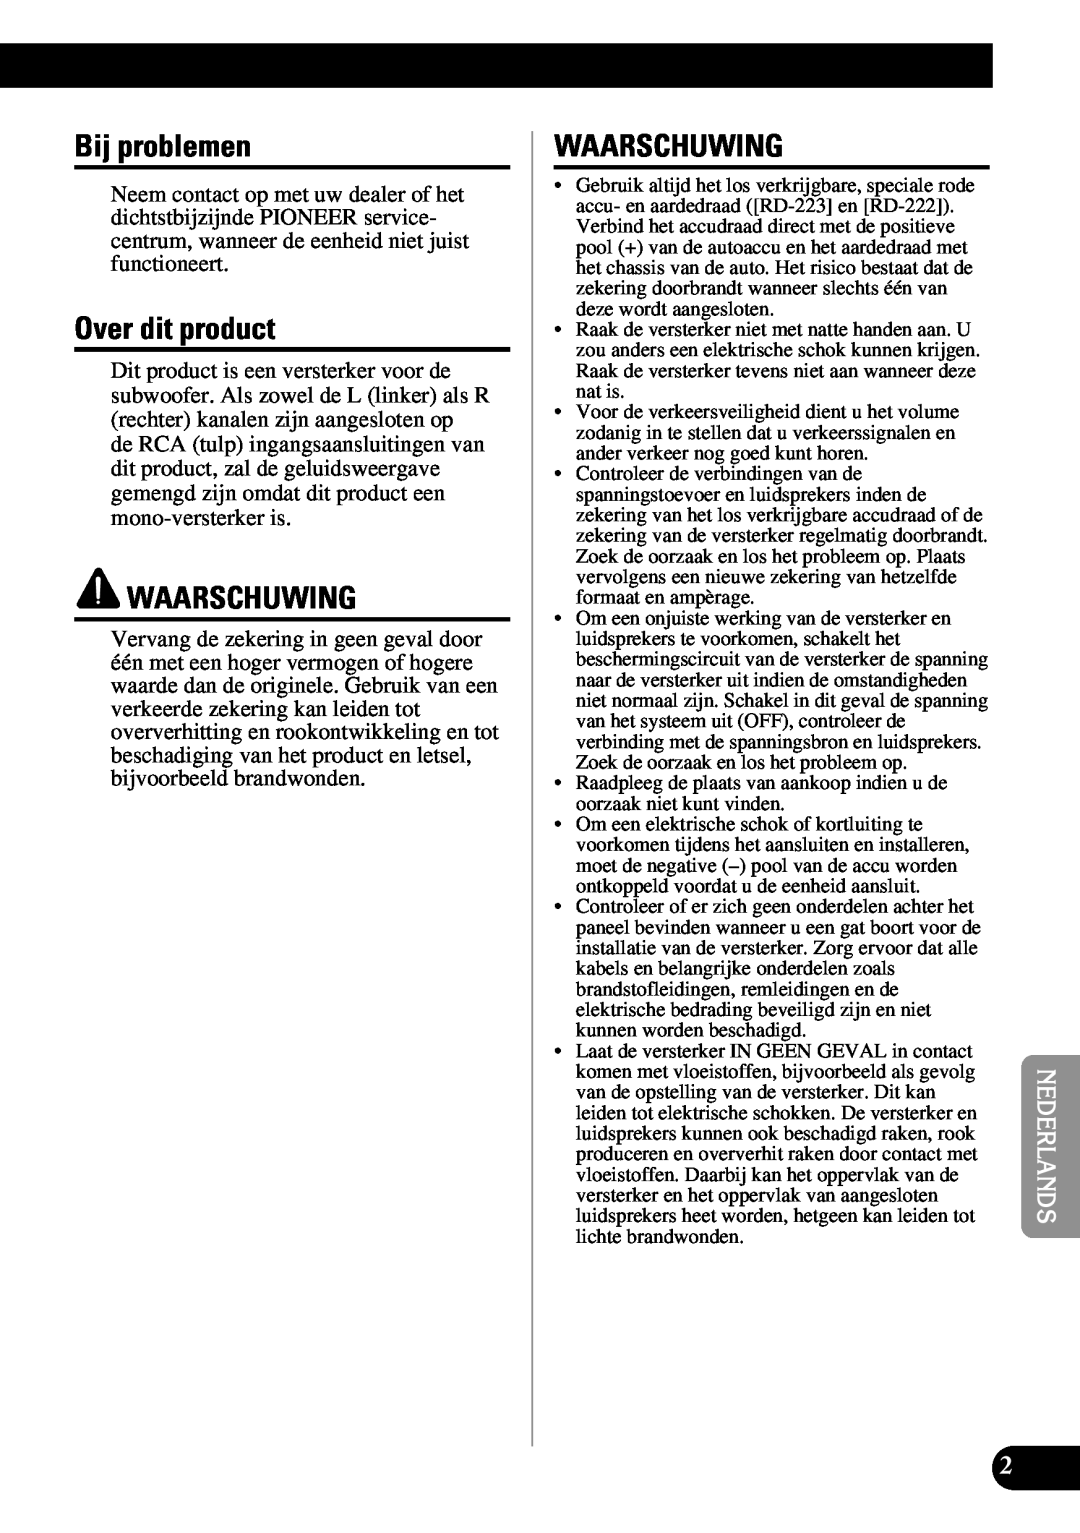 Pioneer PRS-D1100M owner manual Bij problemen, Over dit product, Waarschuwing 